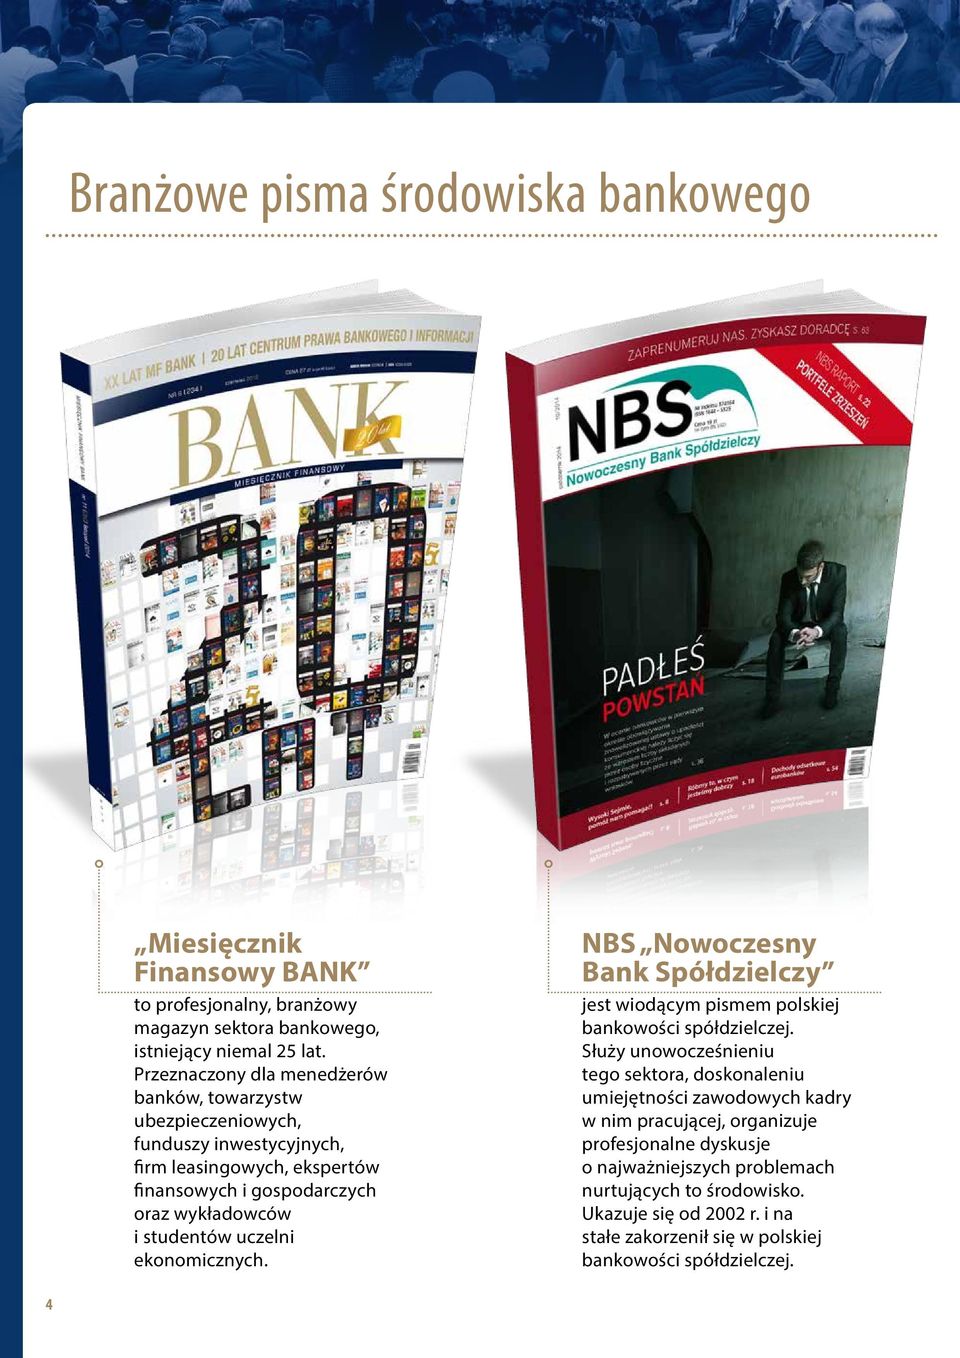 uczelni ekonomicznych. NBS Nowoczesny Bank Spółdzielczy jest wiodącym pismem polskiej bankowości spółdzielczej.